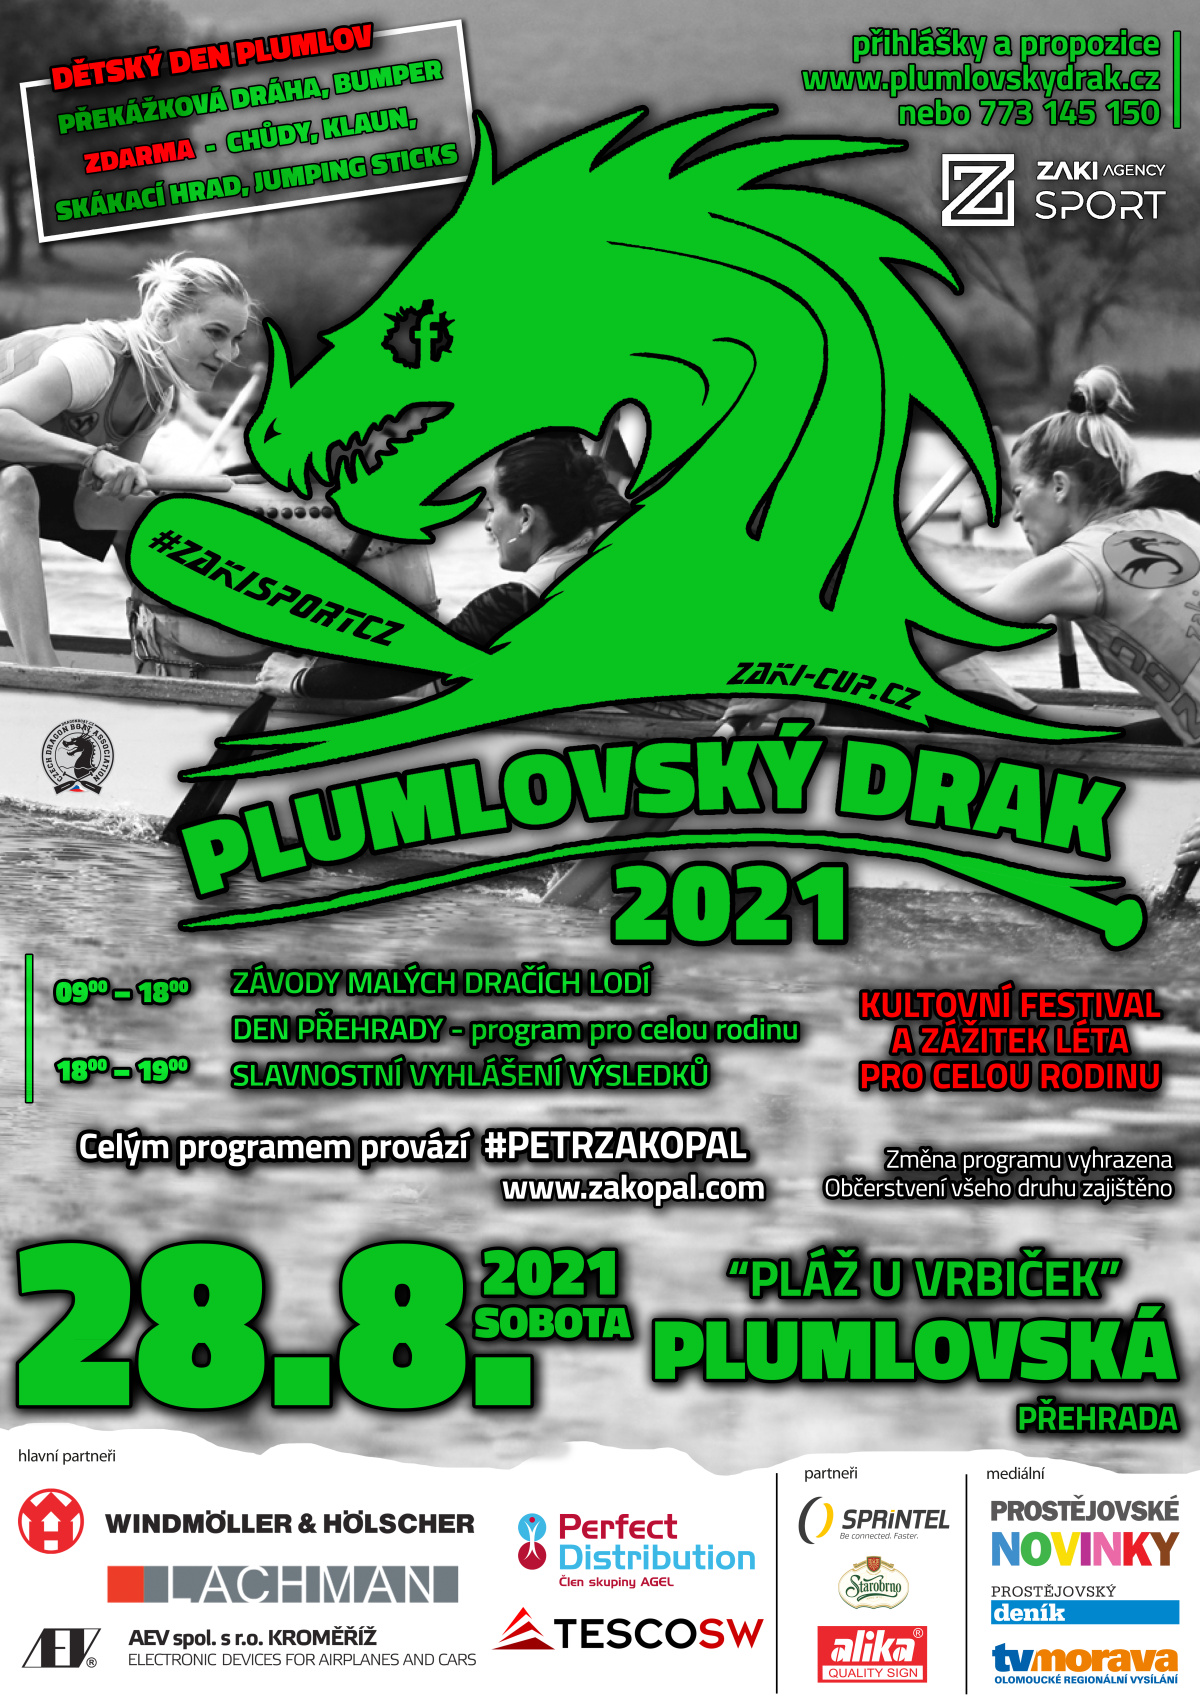 plumlovsky drak 2021